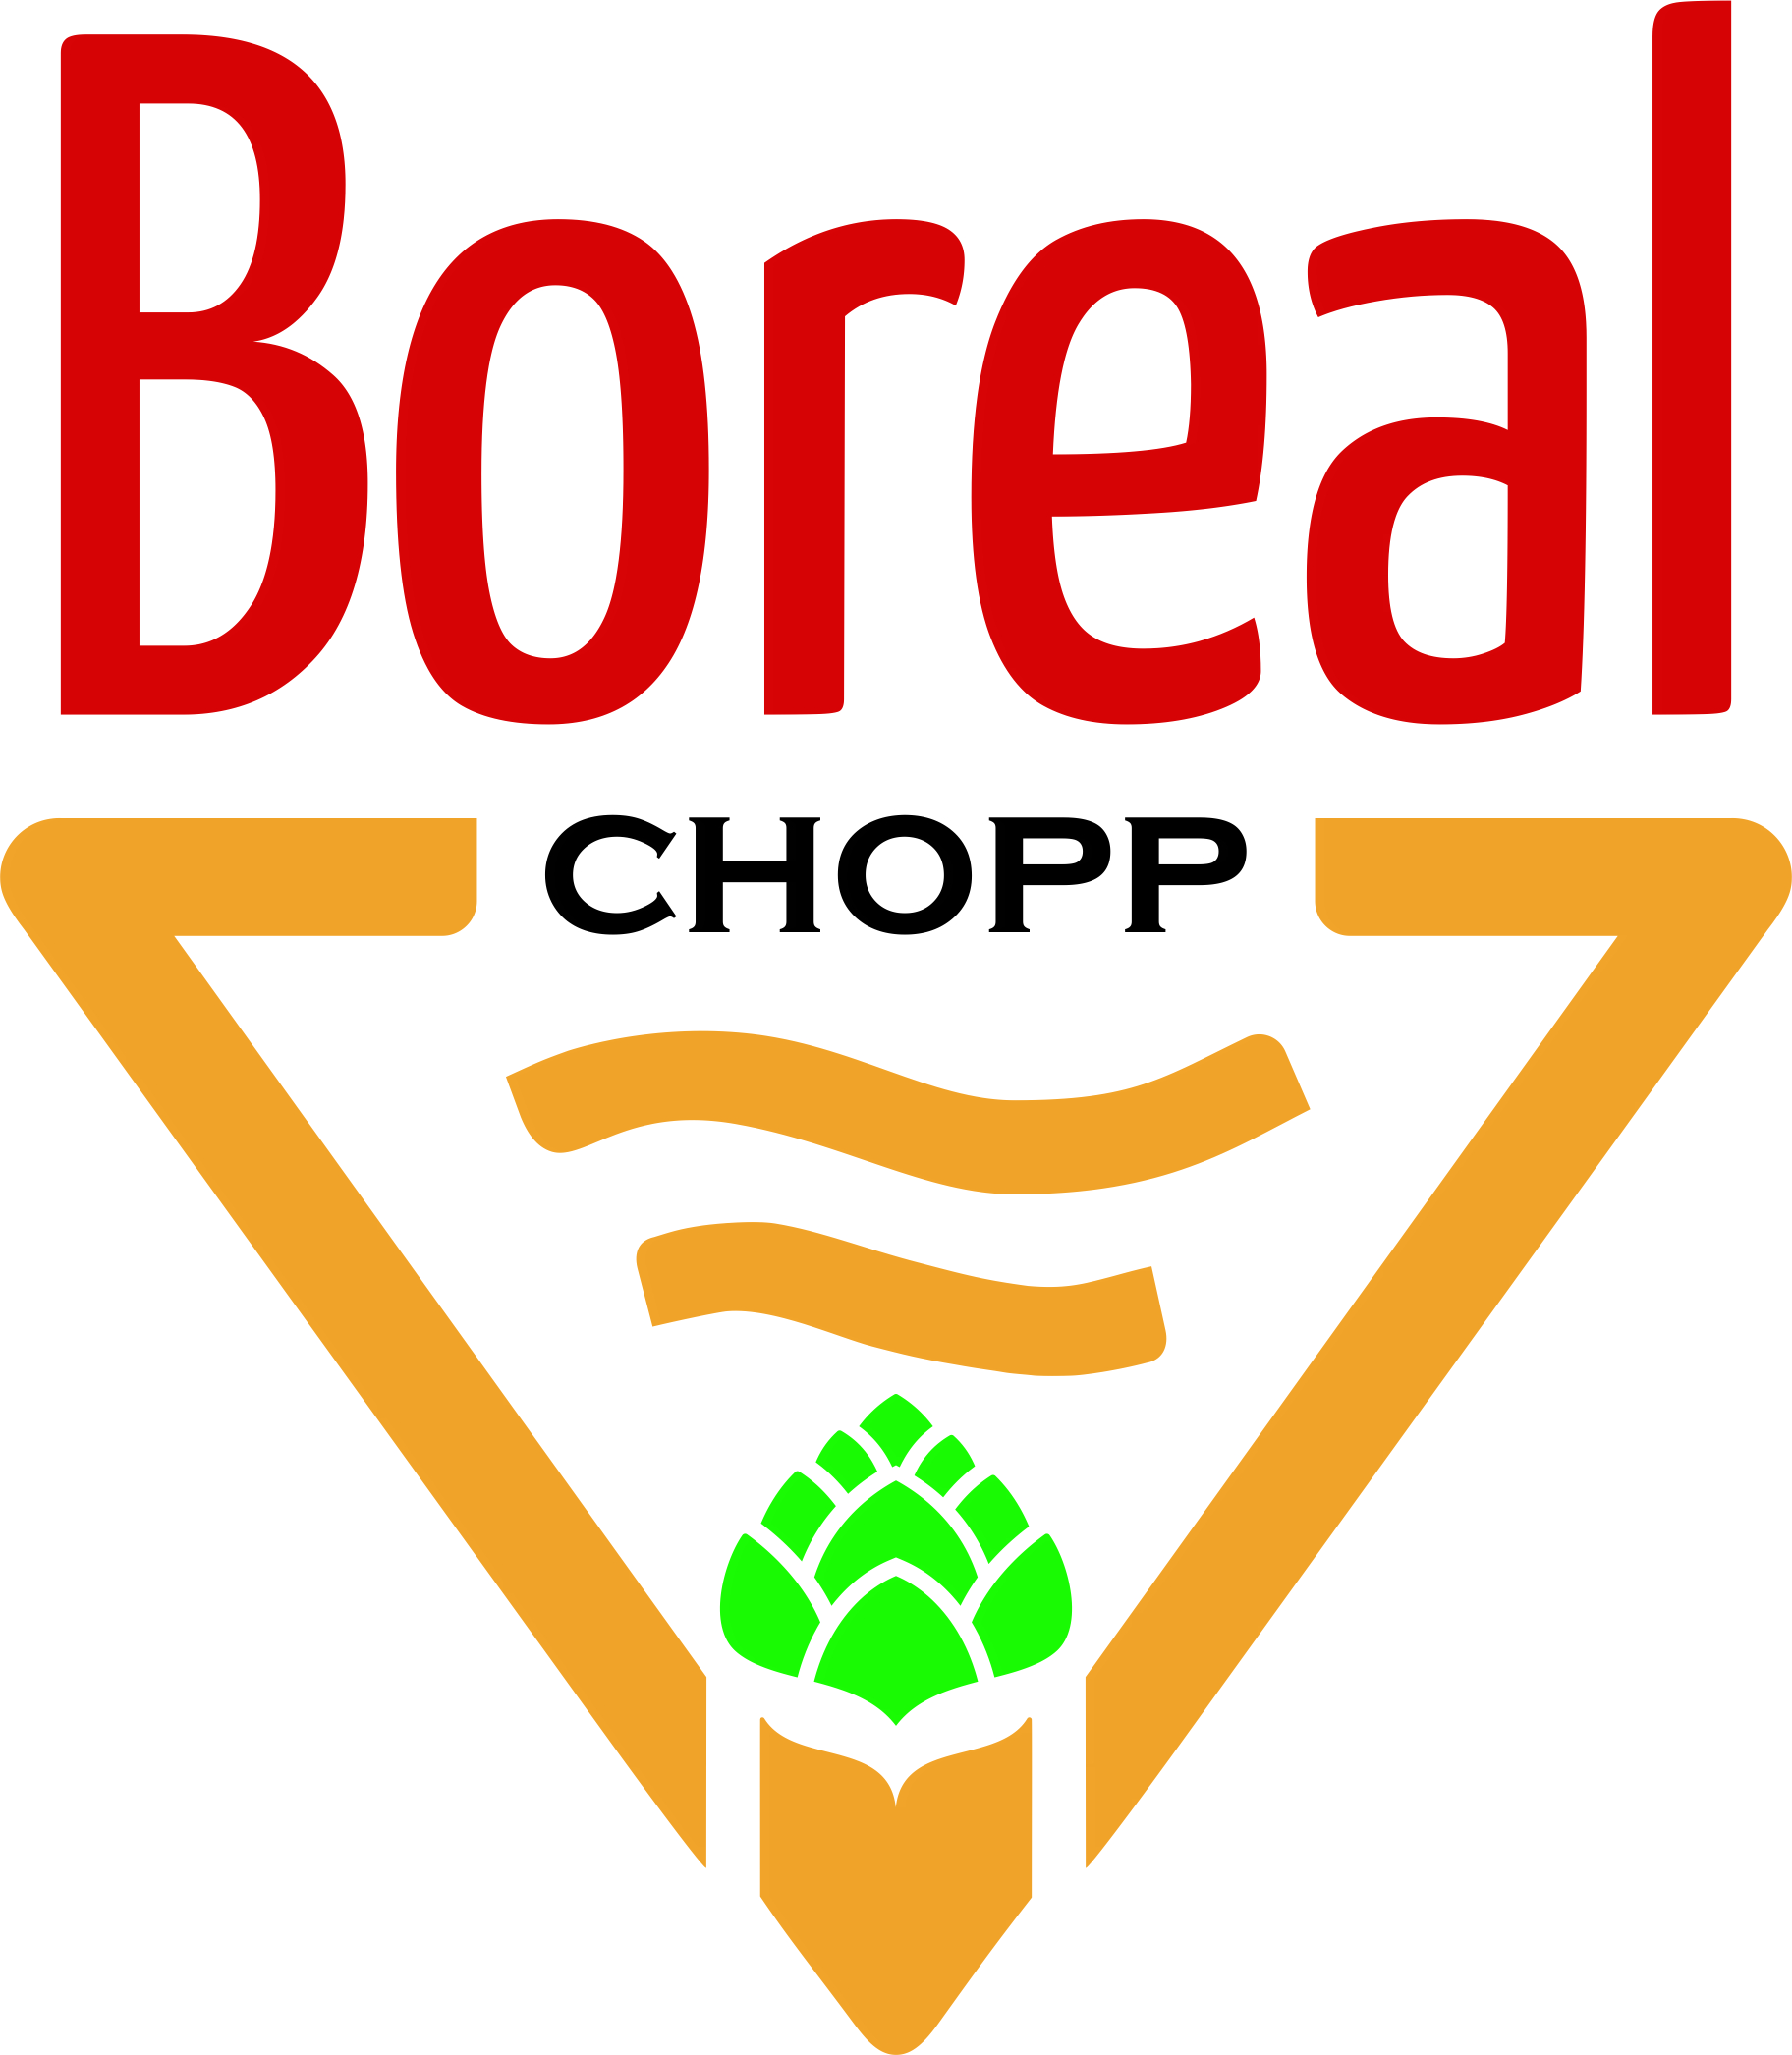 CHOPP BOREAL